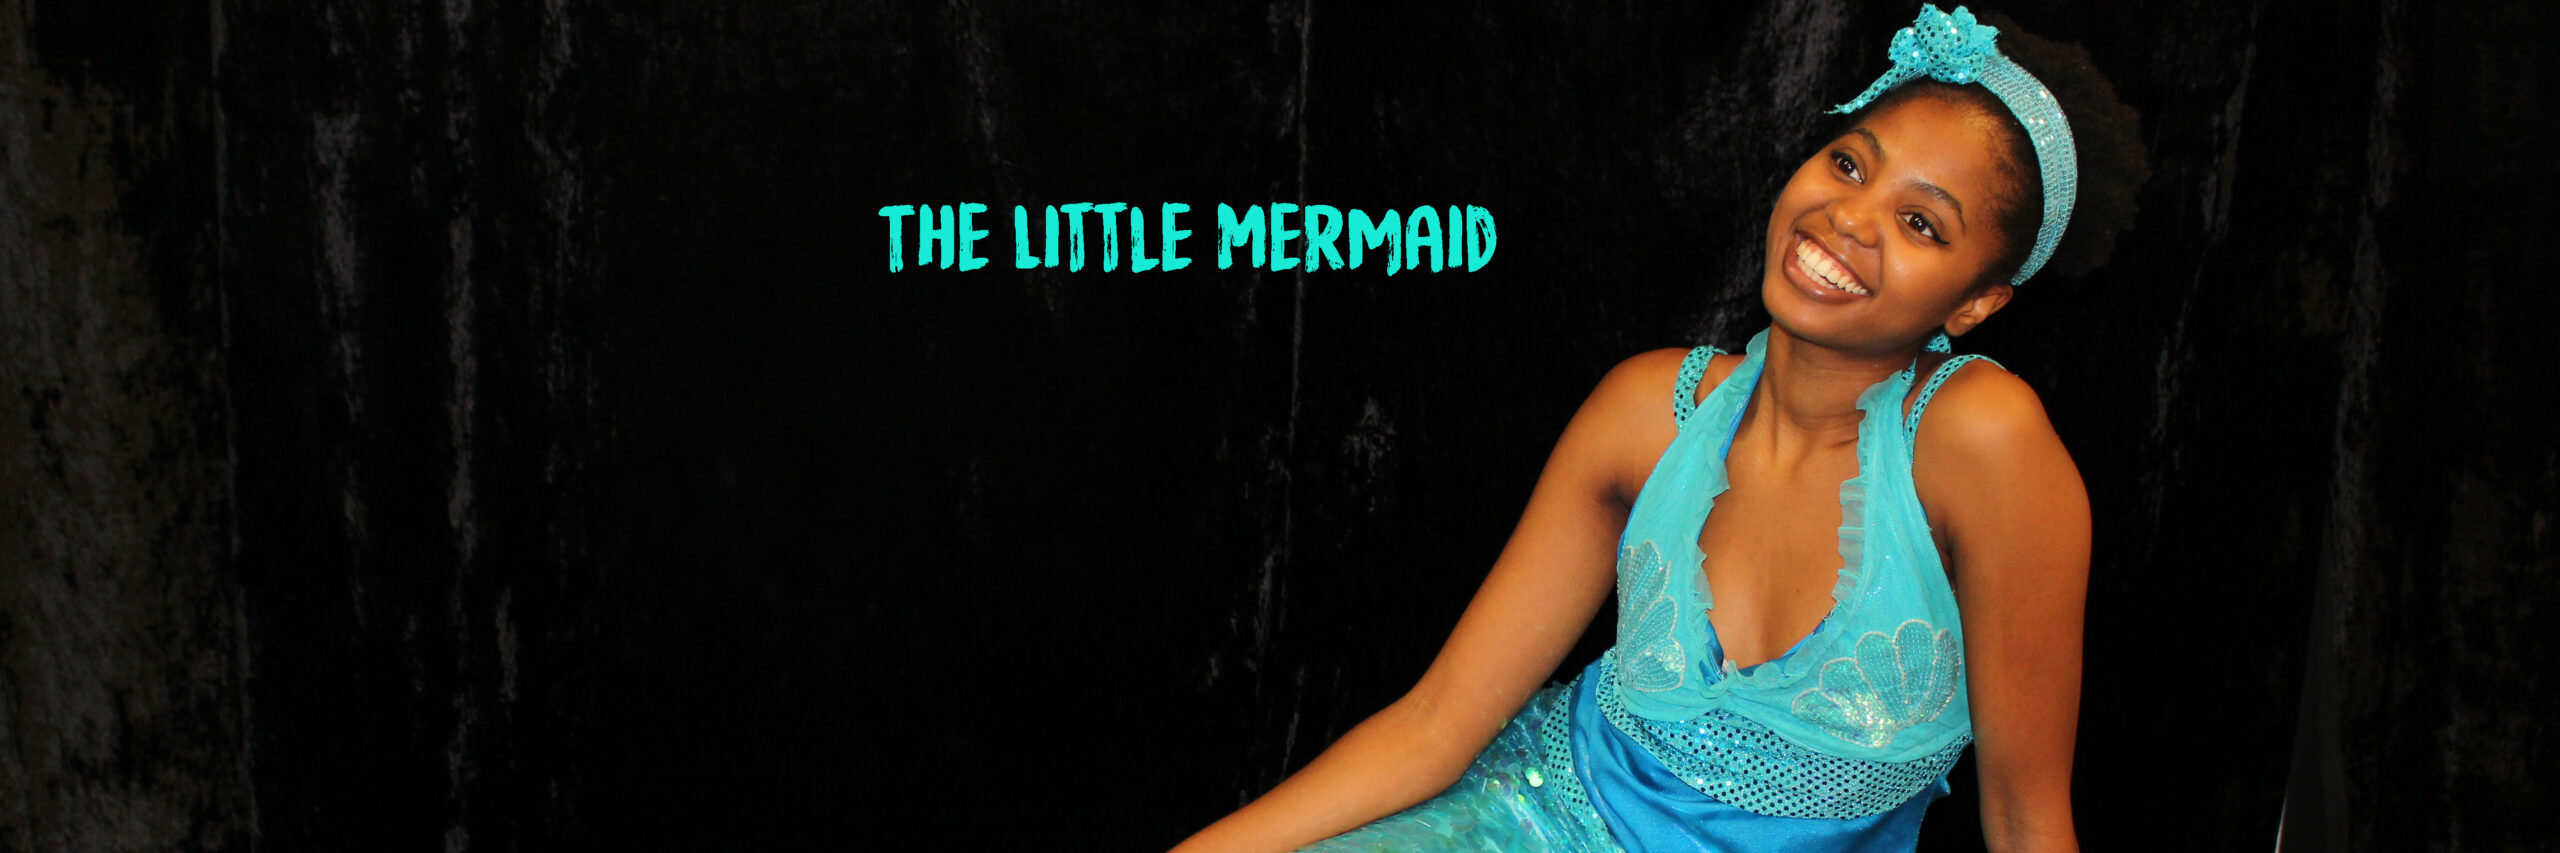 The Little Mermaid - Storyacting